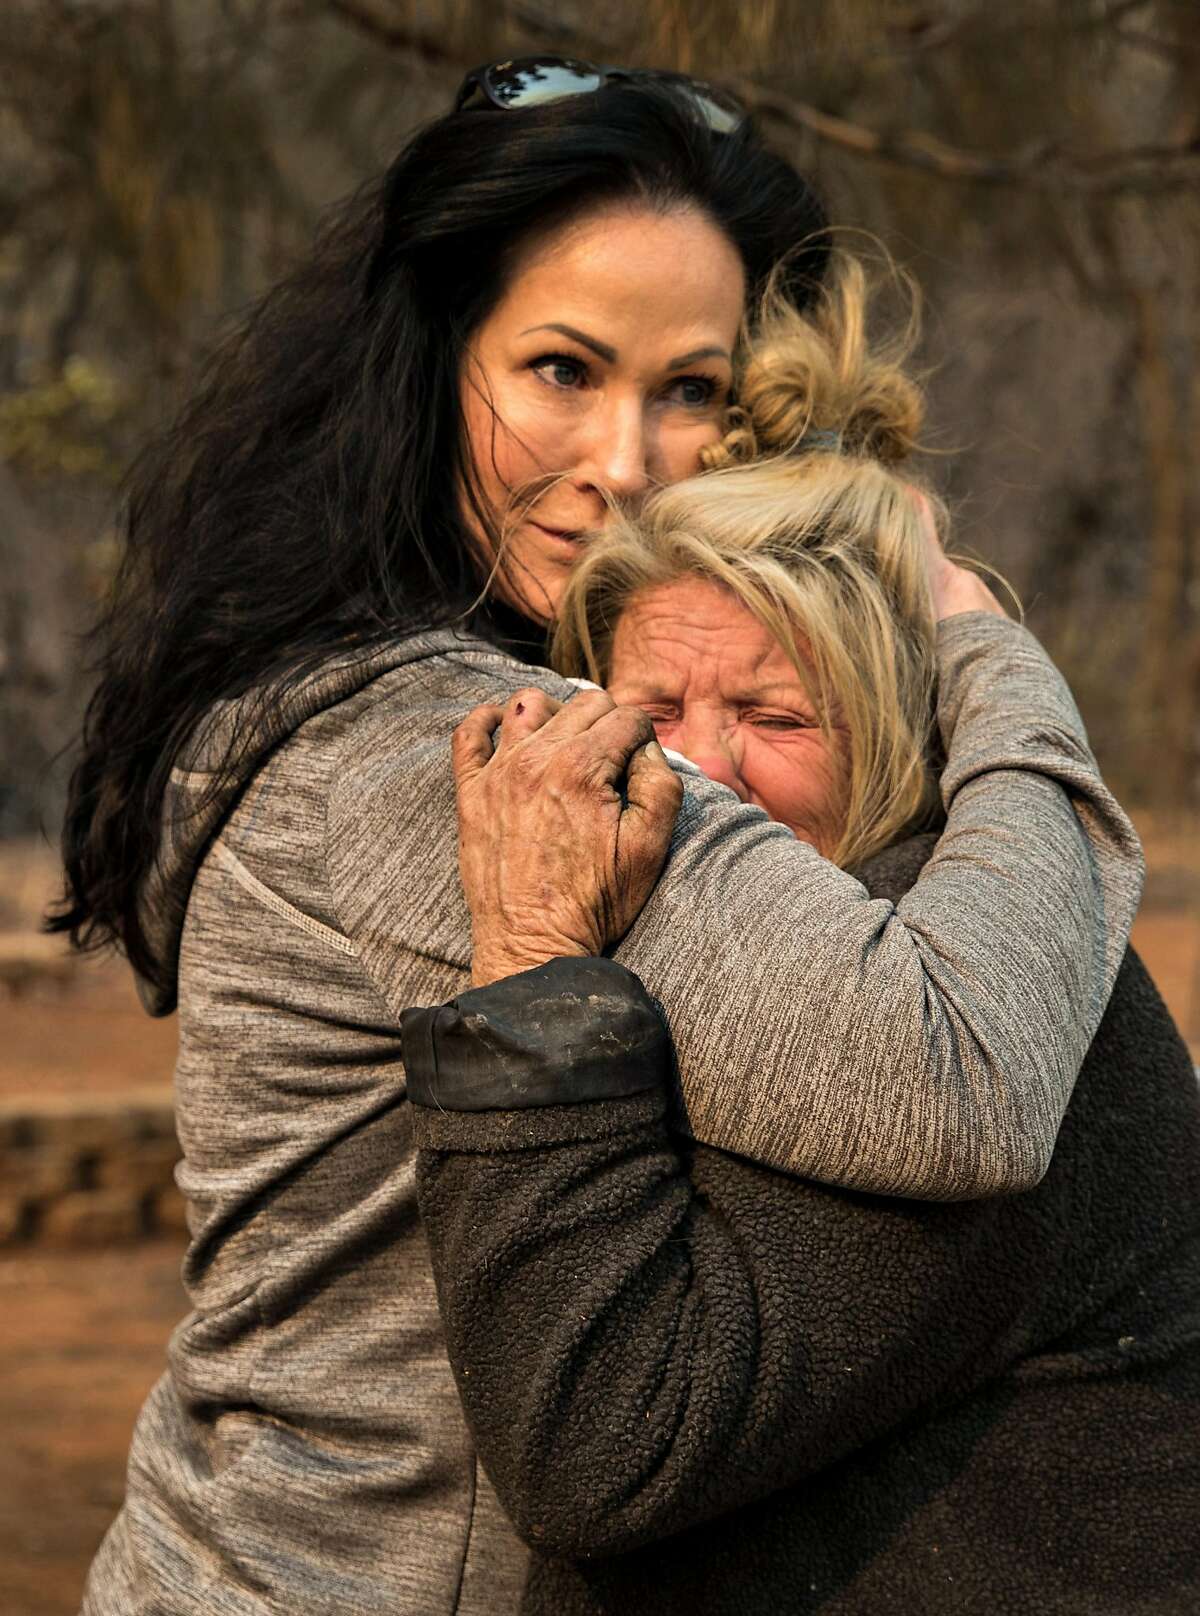 2018年11月11日，动物志愿者塔玛拉·休斯顿(左)在凯茜·法伦的家外安慰她。法伦在加州天堂镇的营火中幸存下来，当时她躲在埃奇伍德巷的家中。